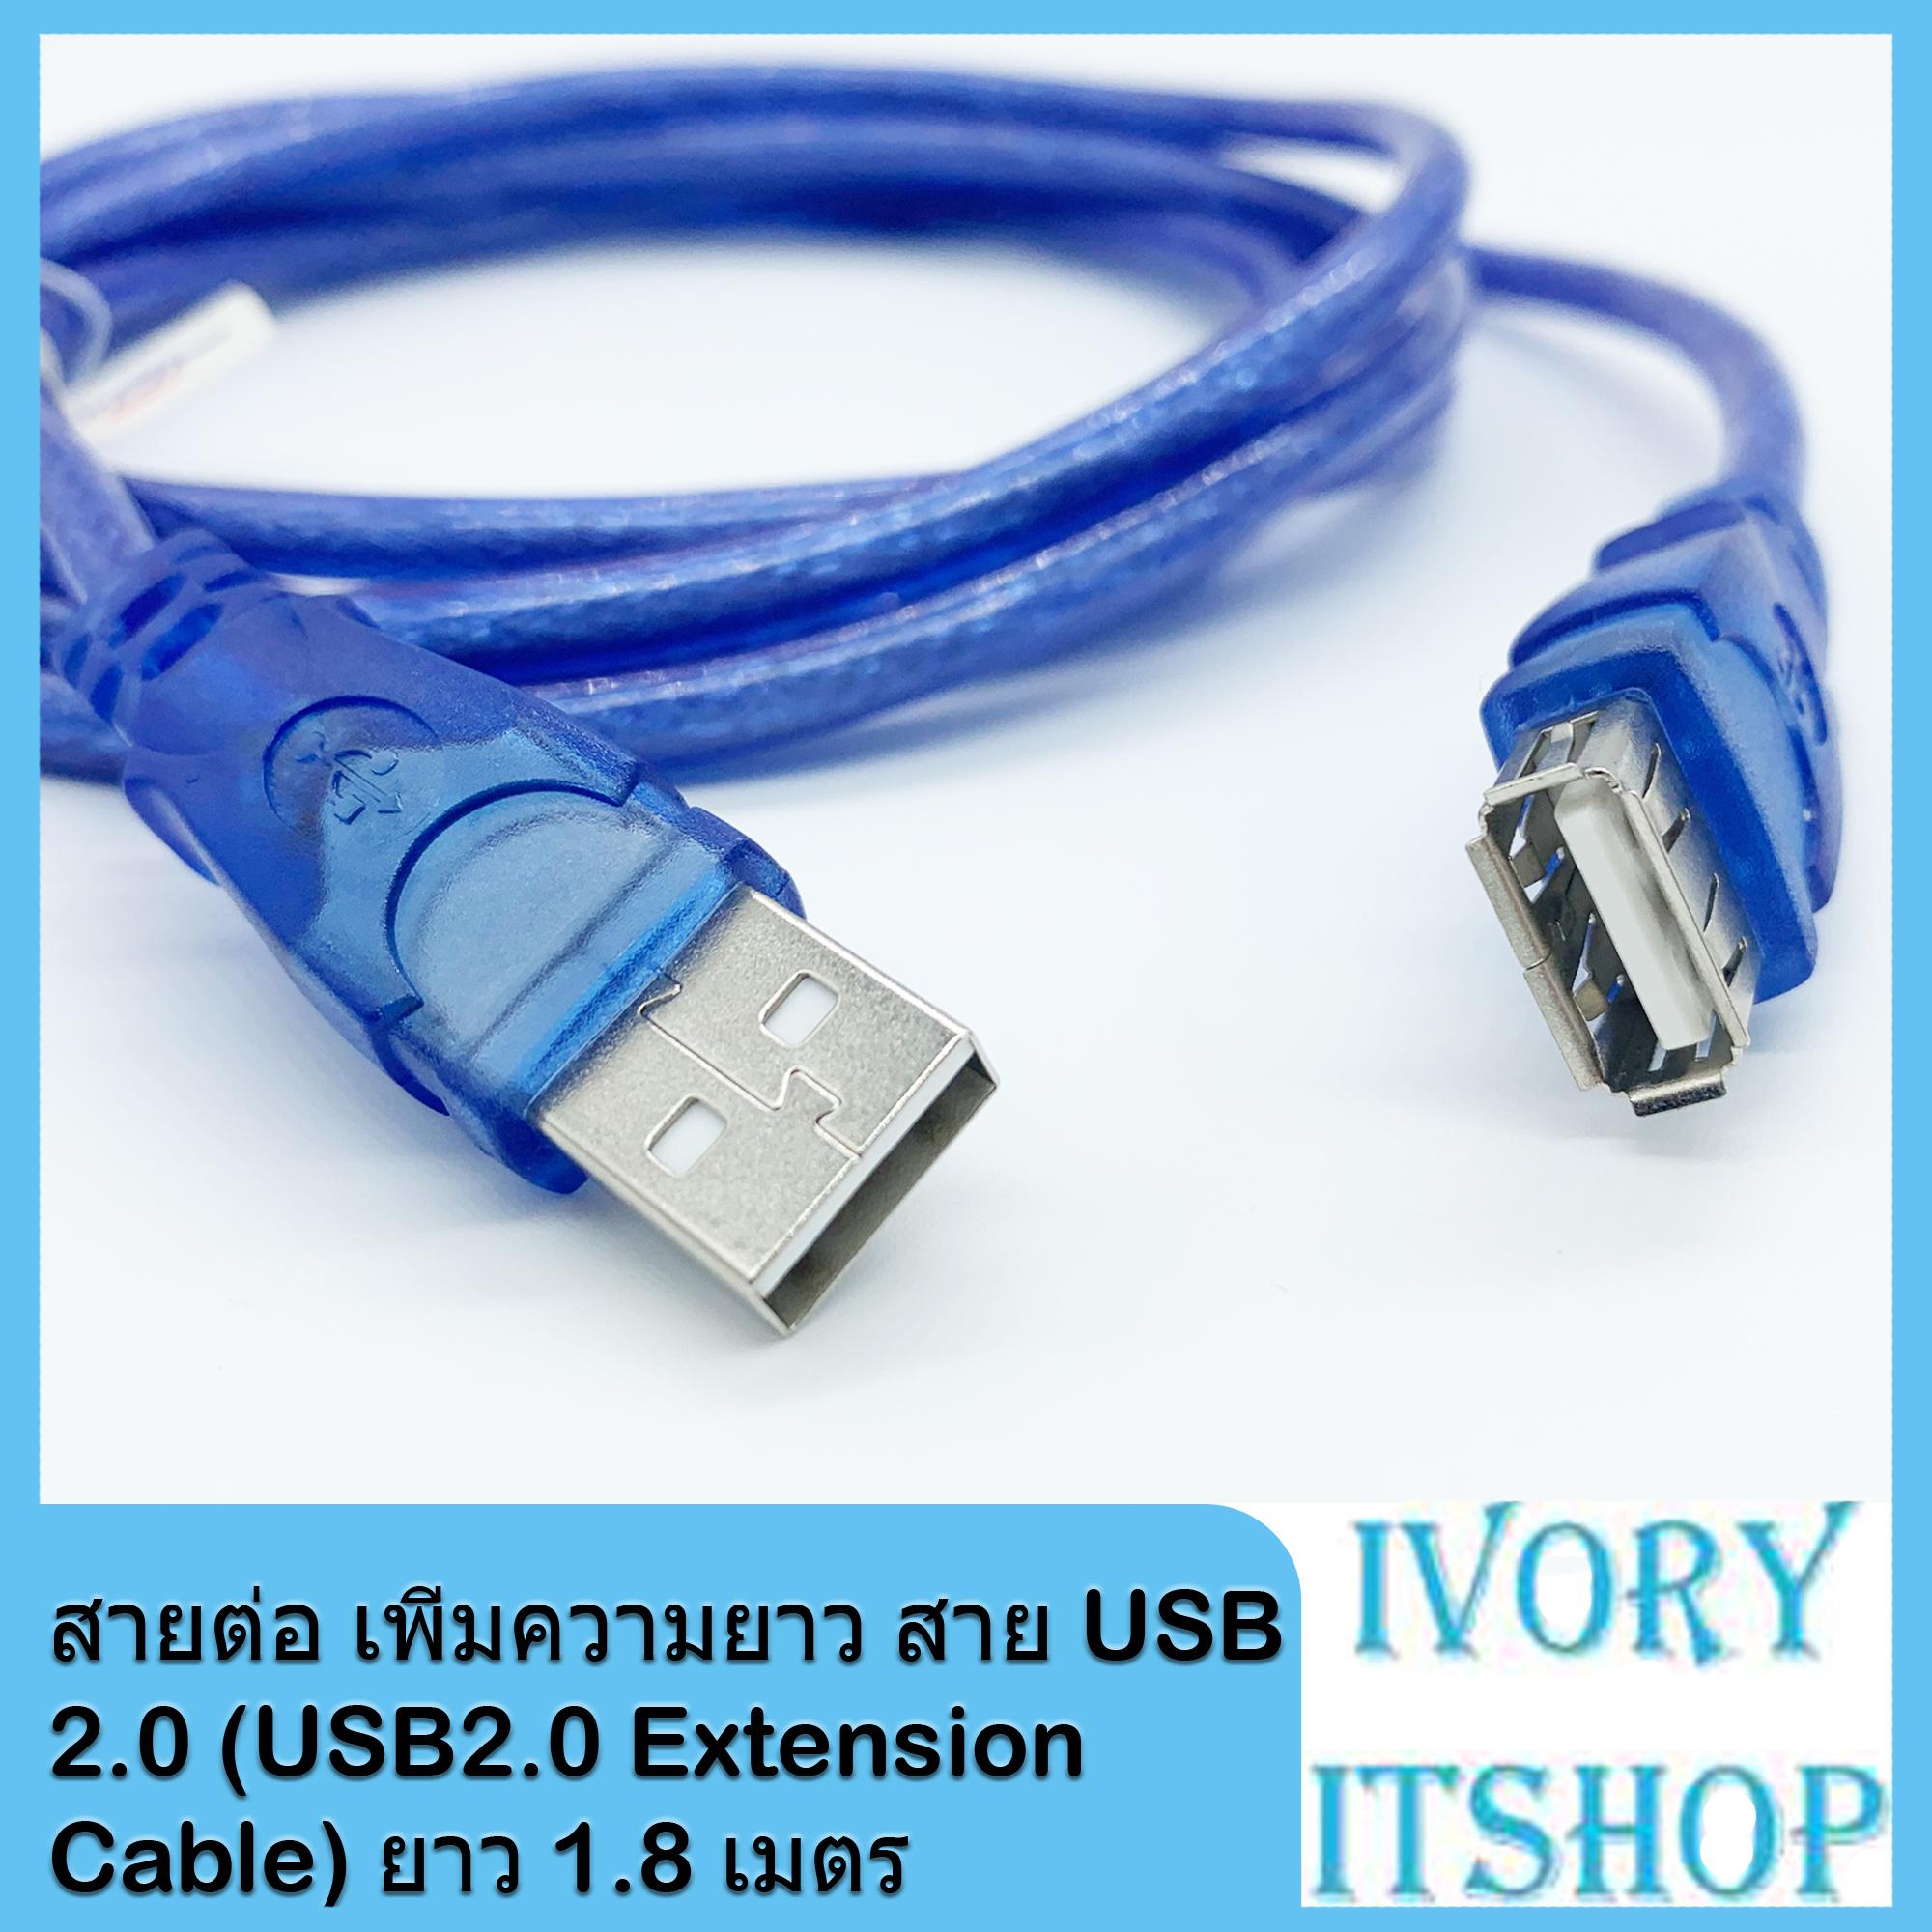 สายต่อ เพิ่มความยาว สาย USB 2.0 (USB2.0 Extension Cable) ยาว 1.8 เมตร/ivoryitshop